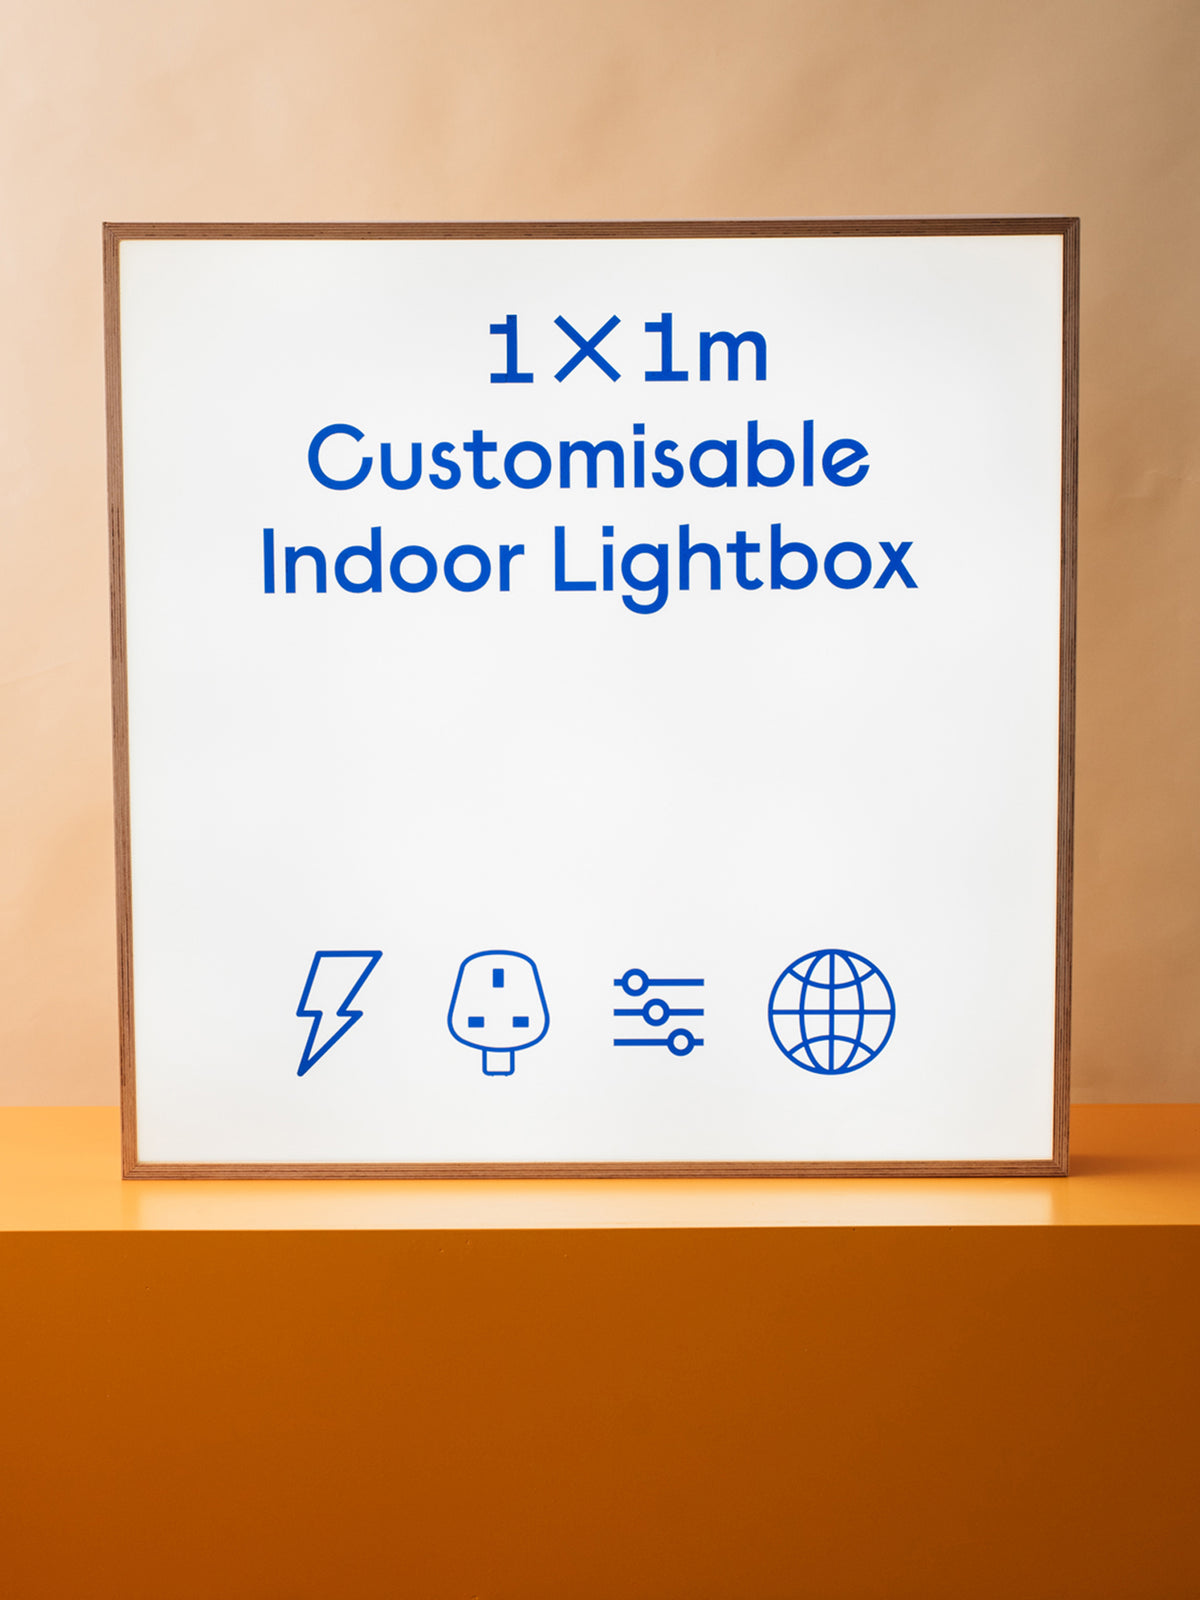 1 X 1m Indoor Lightbox